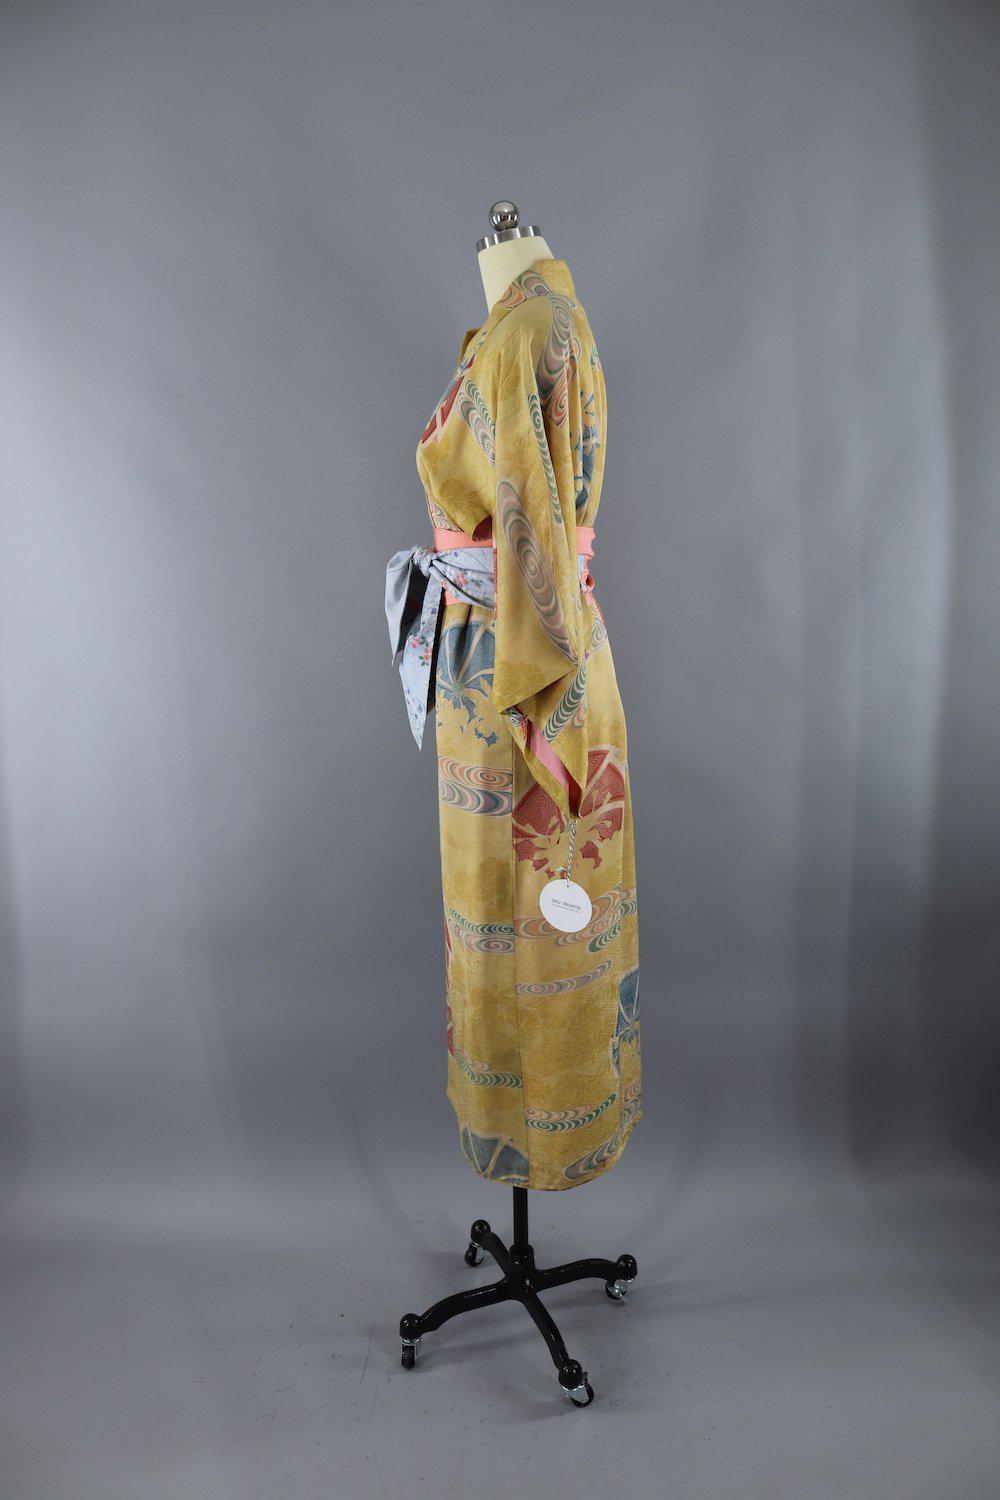 Vintage 1930s Silk Kimono Robe / Yellow Gold Art Deco Print - ThisBlueBird